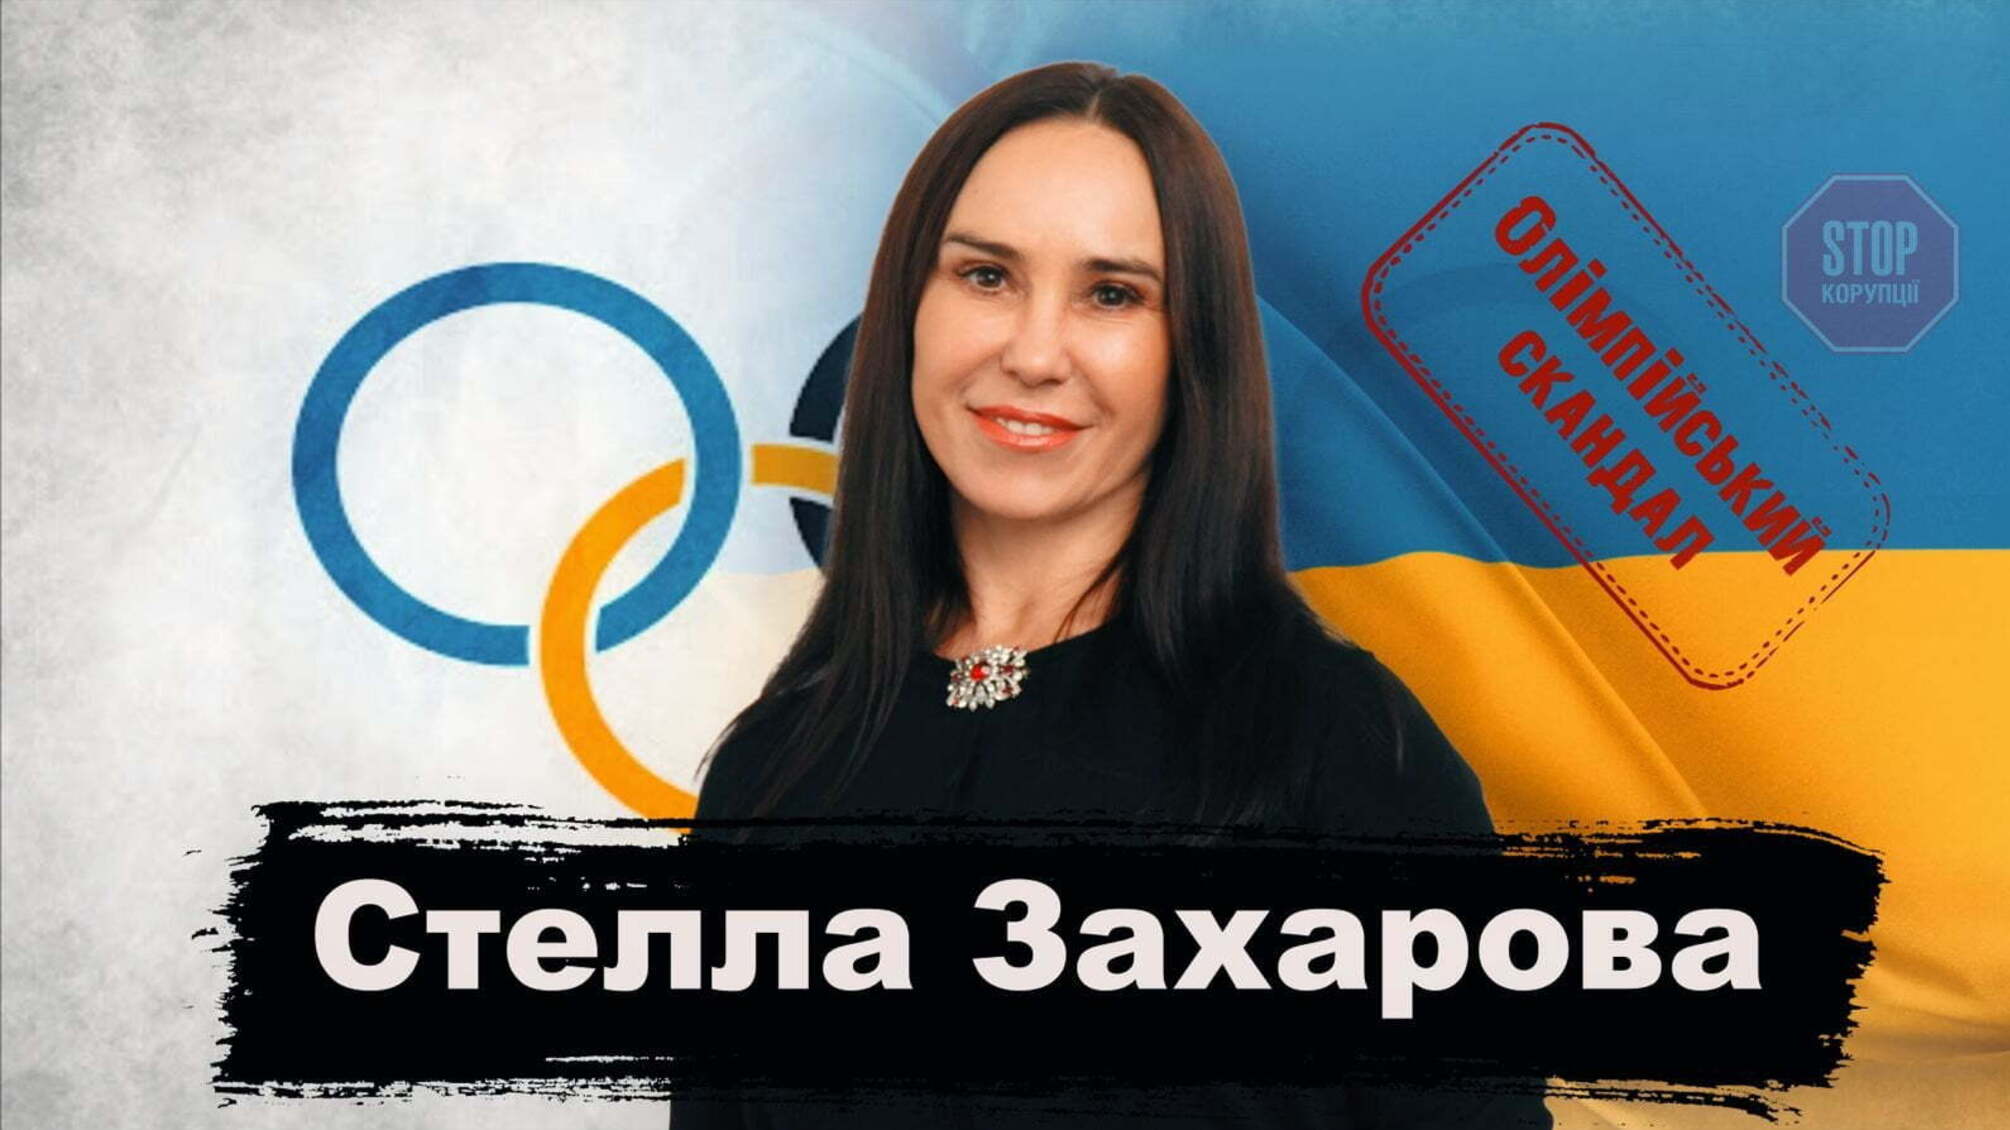 Олімпійський провал, цькування спортсменів і приниження від міністра: відверте інтерв‘ю Стелли Захарової